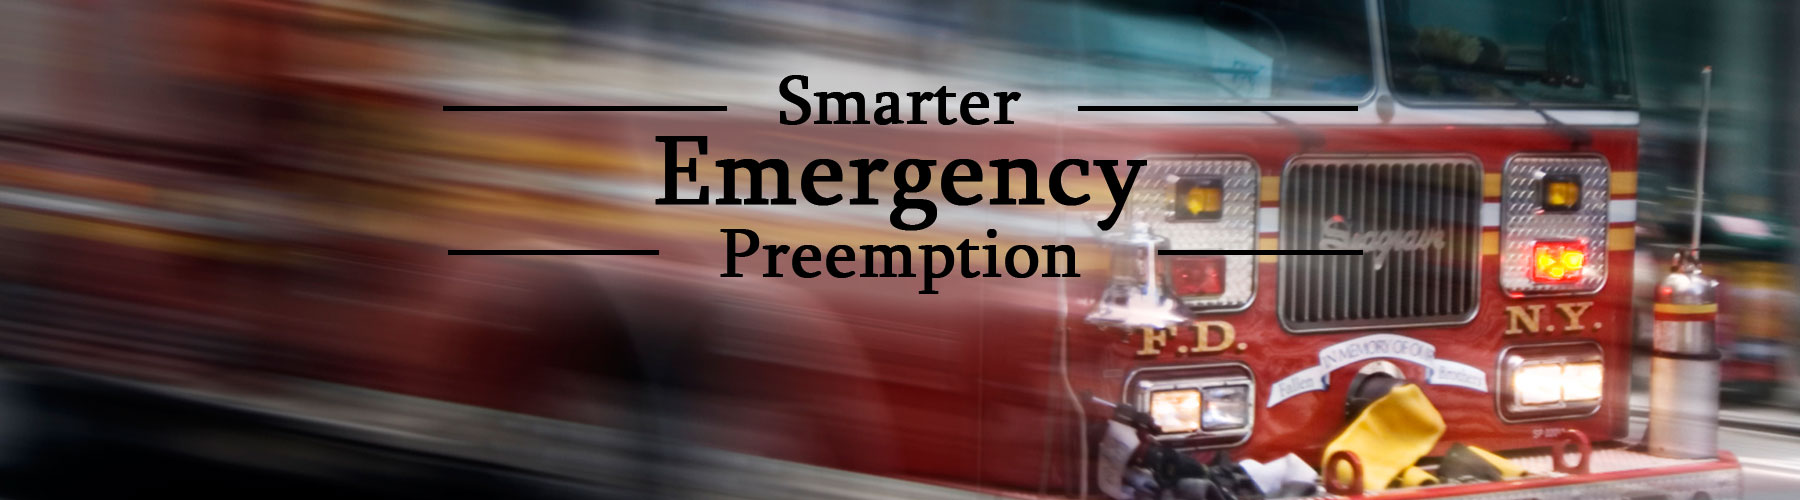 smarter-emergency-preemption